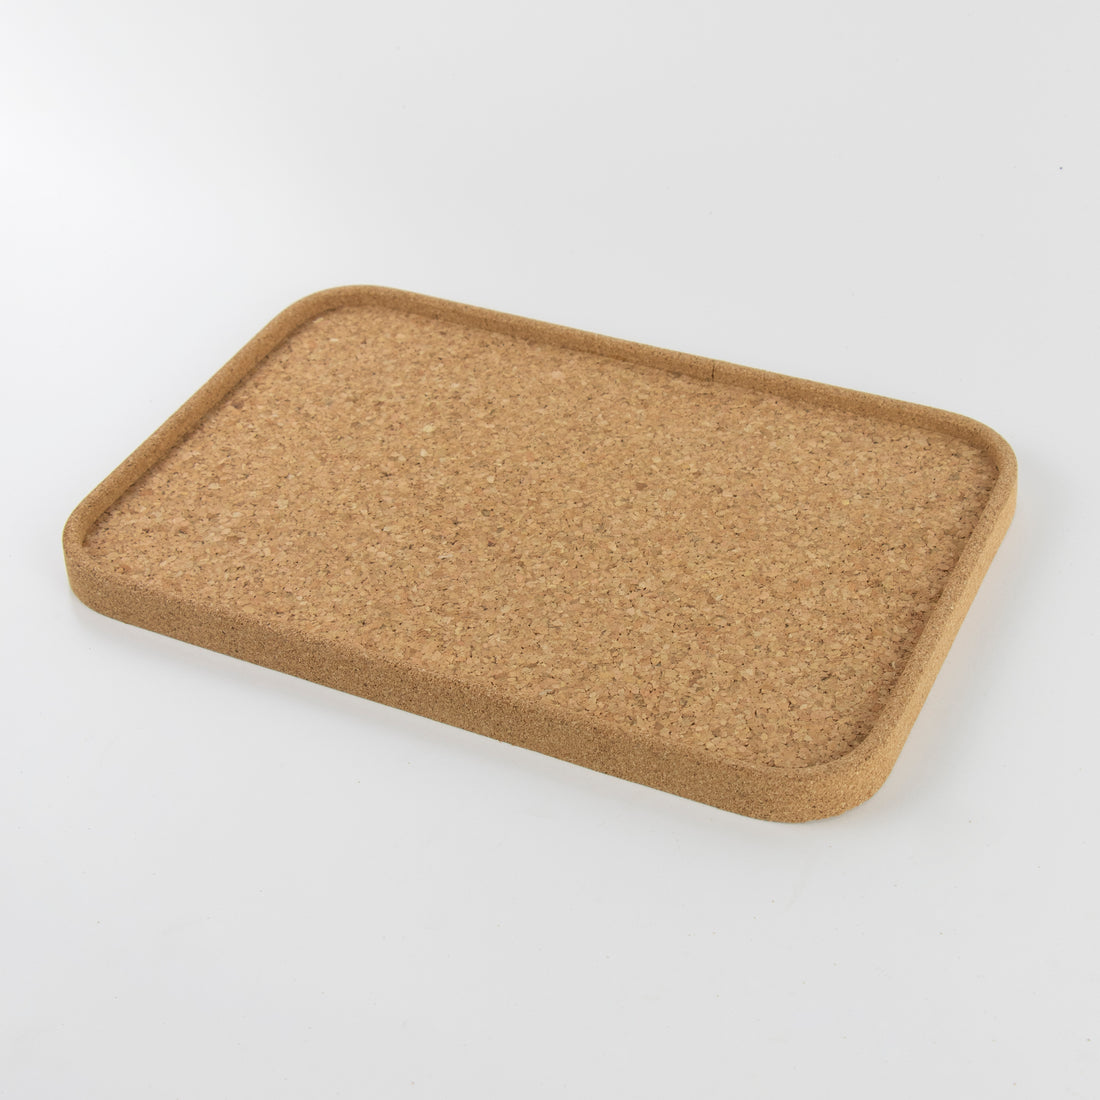 plain cork tray 